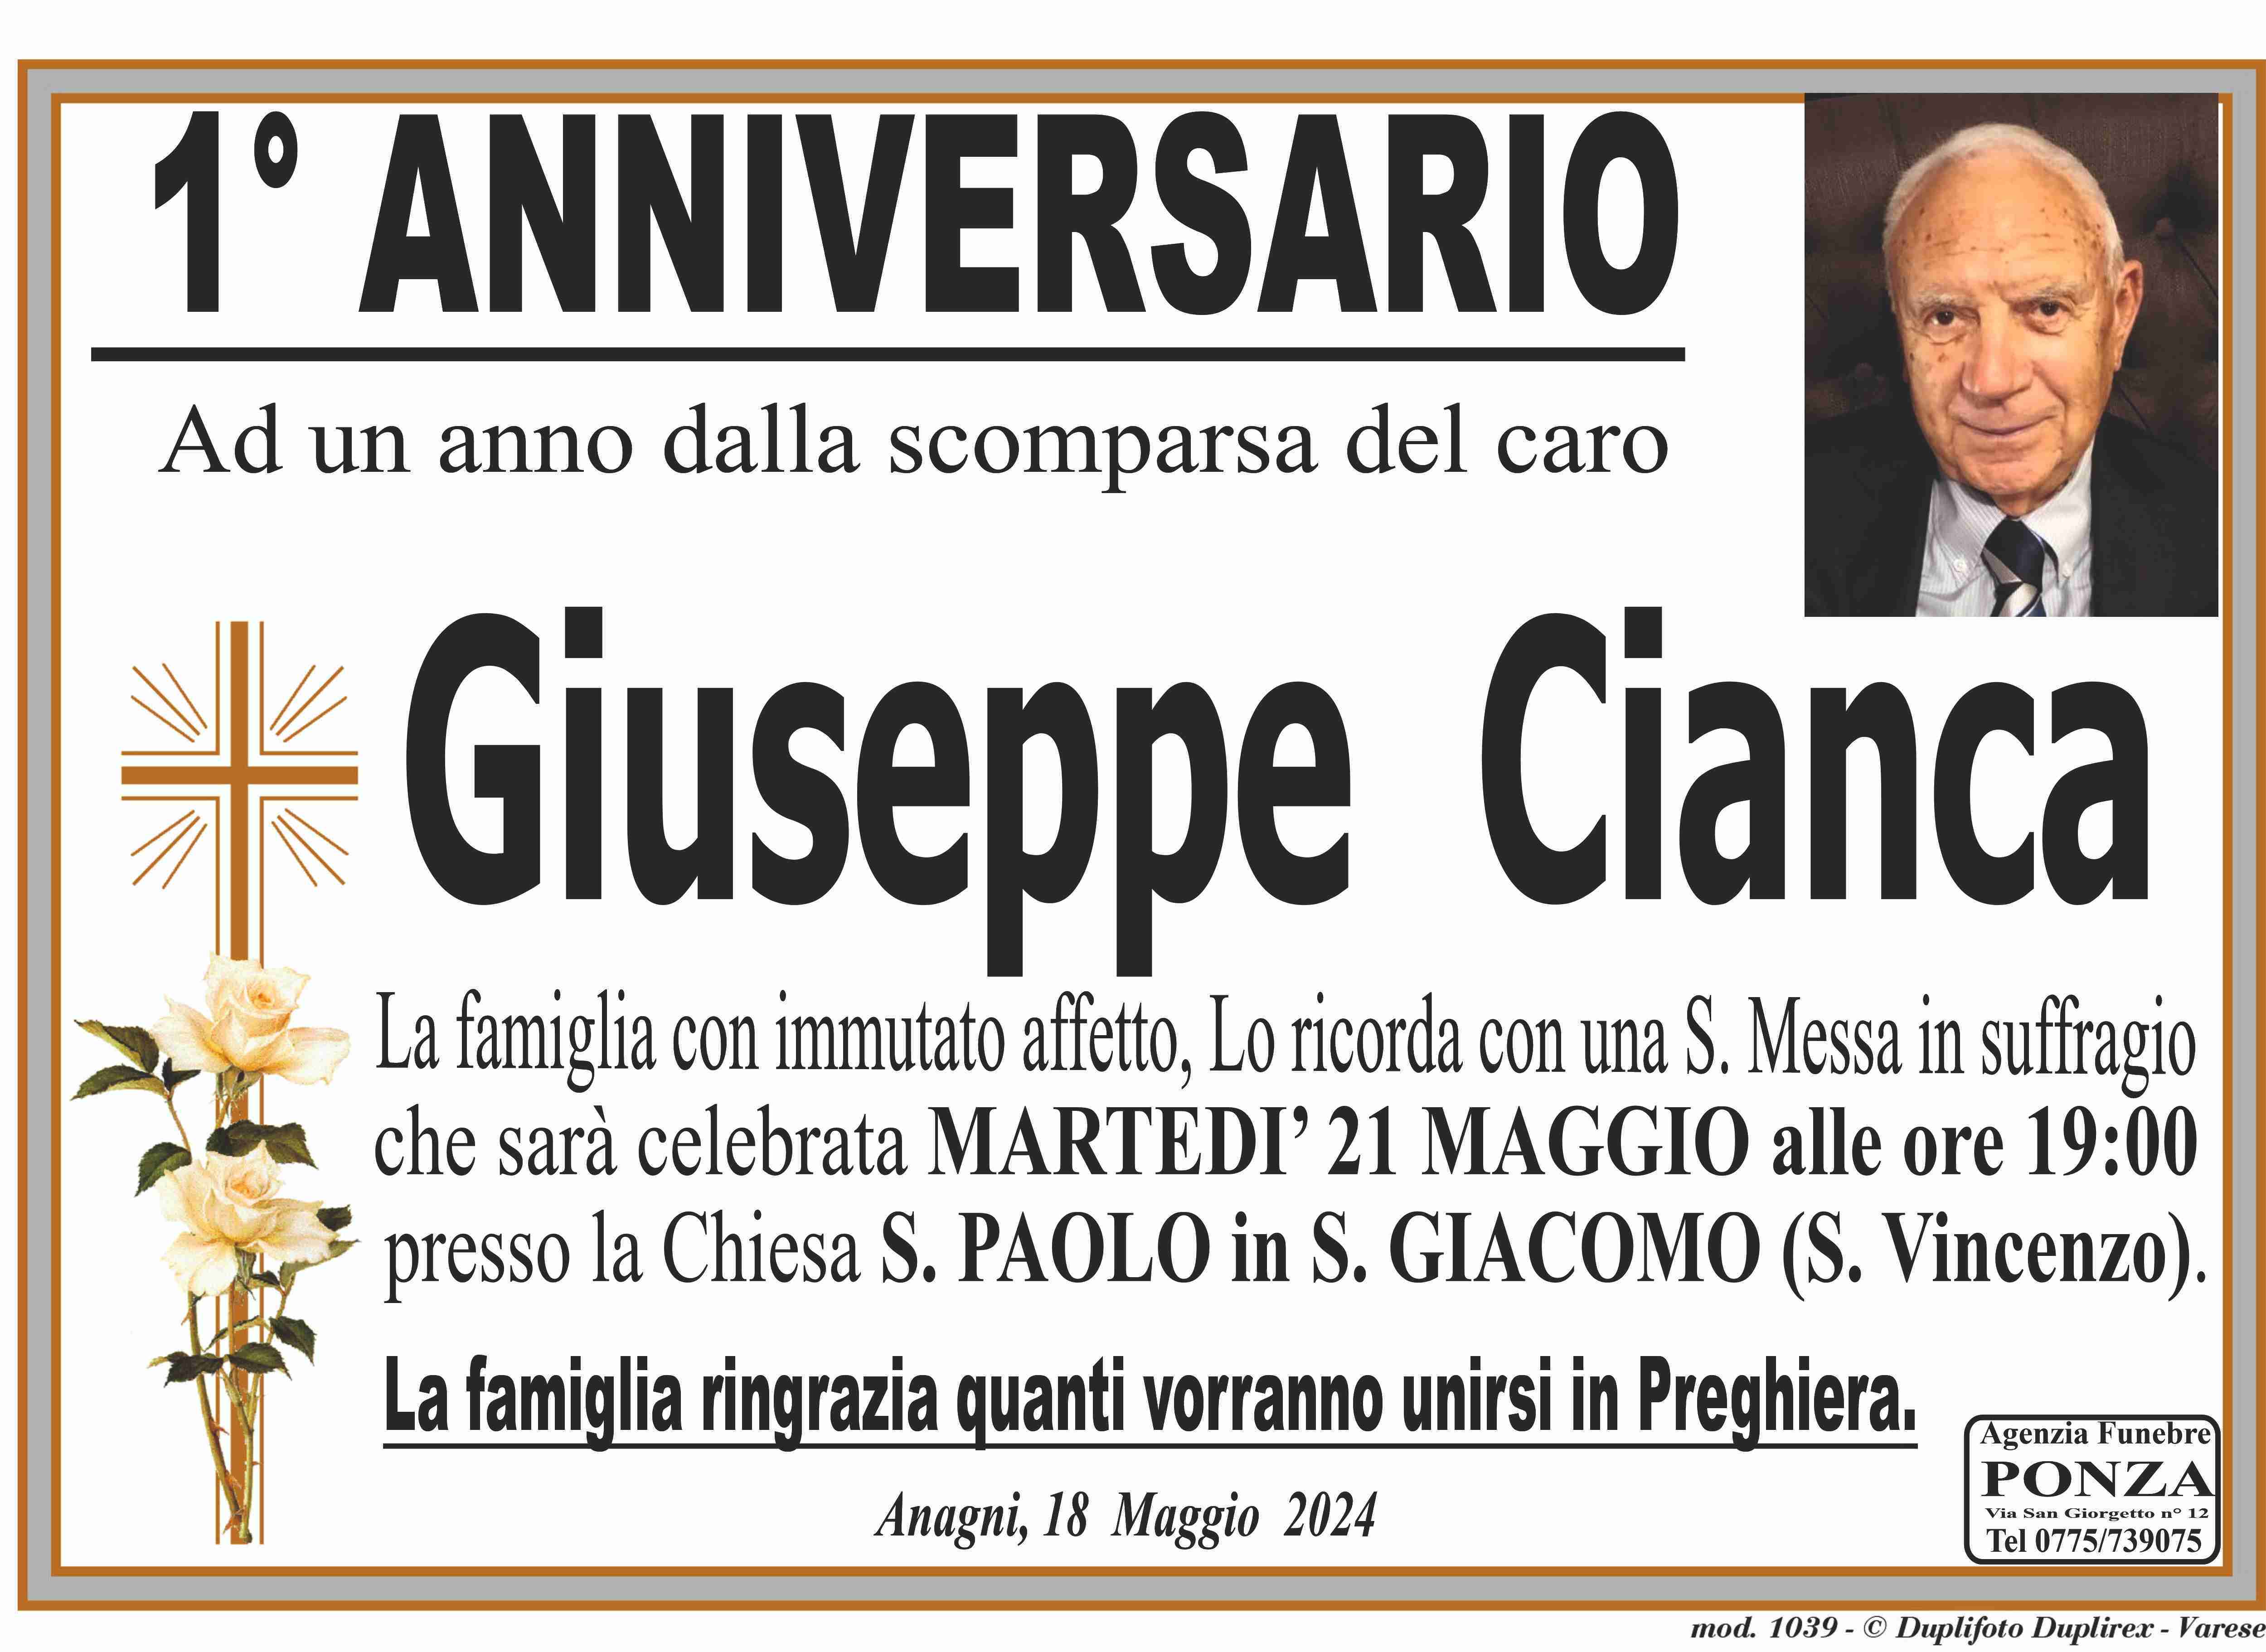 Giuseppe Cianca